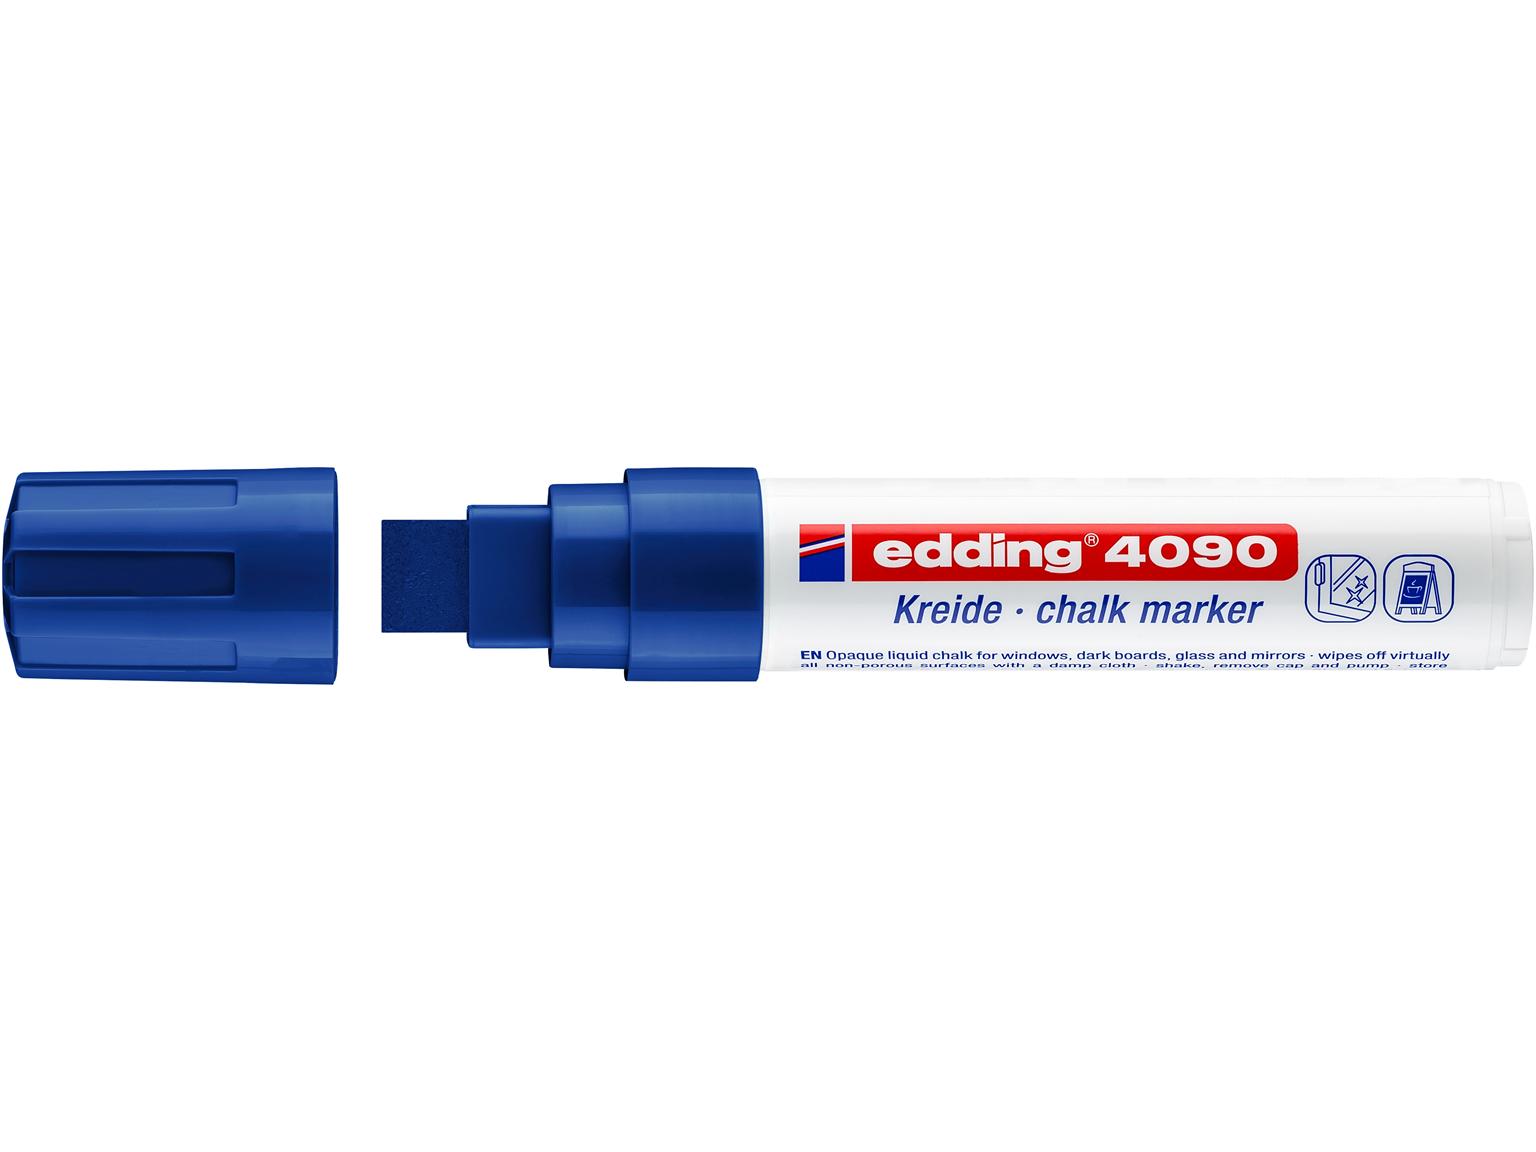 KREIDEMARKER EDDING  edding Kreidemarker 4090 blau